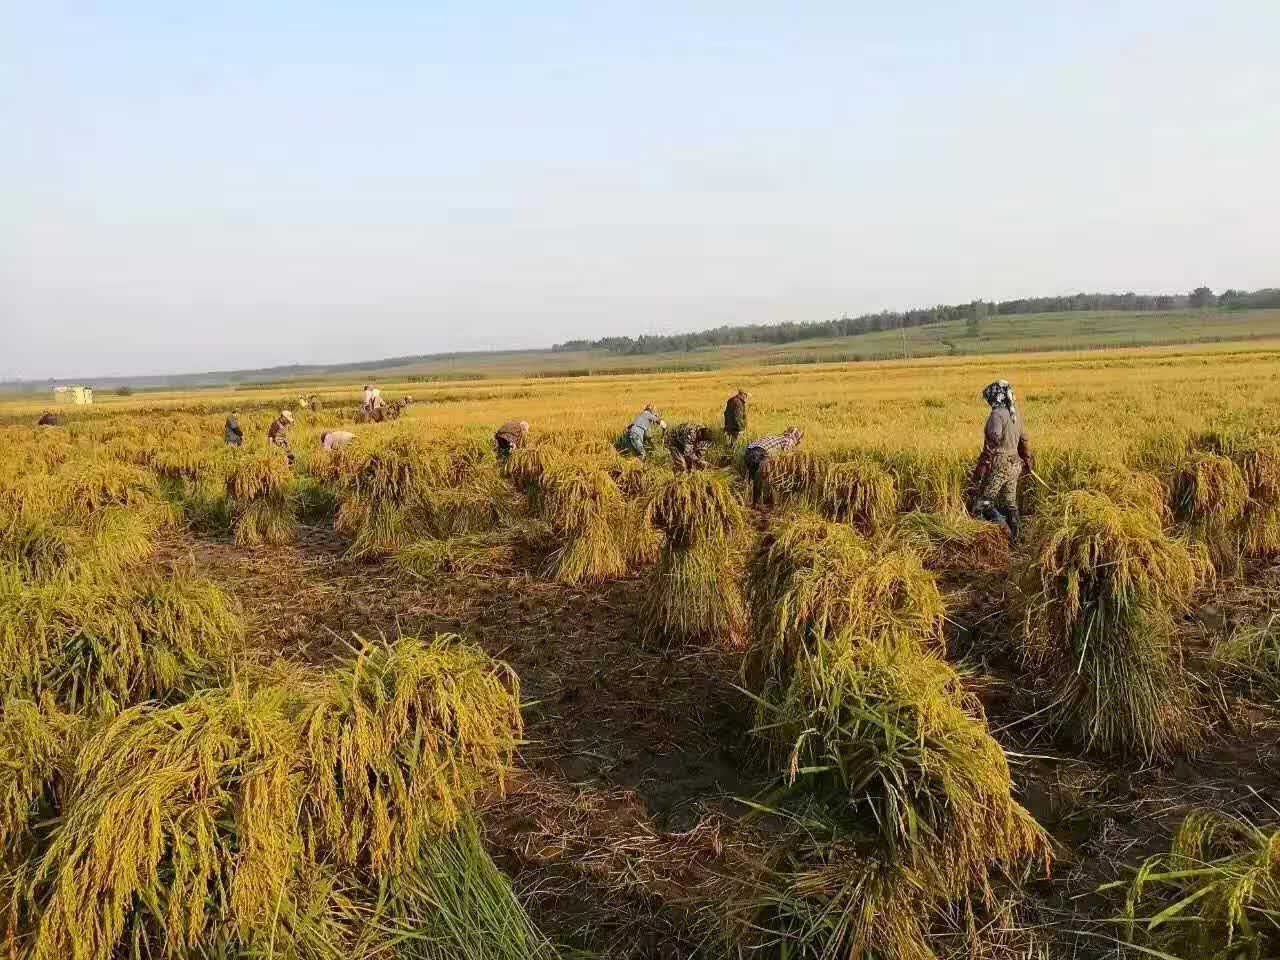 黑龙江绿色农产品水稻稻谷 虎林高产水稻种植合作社